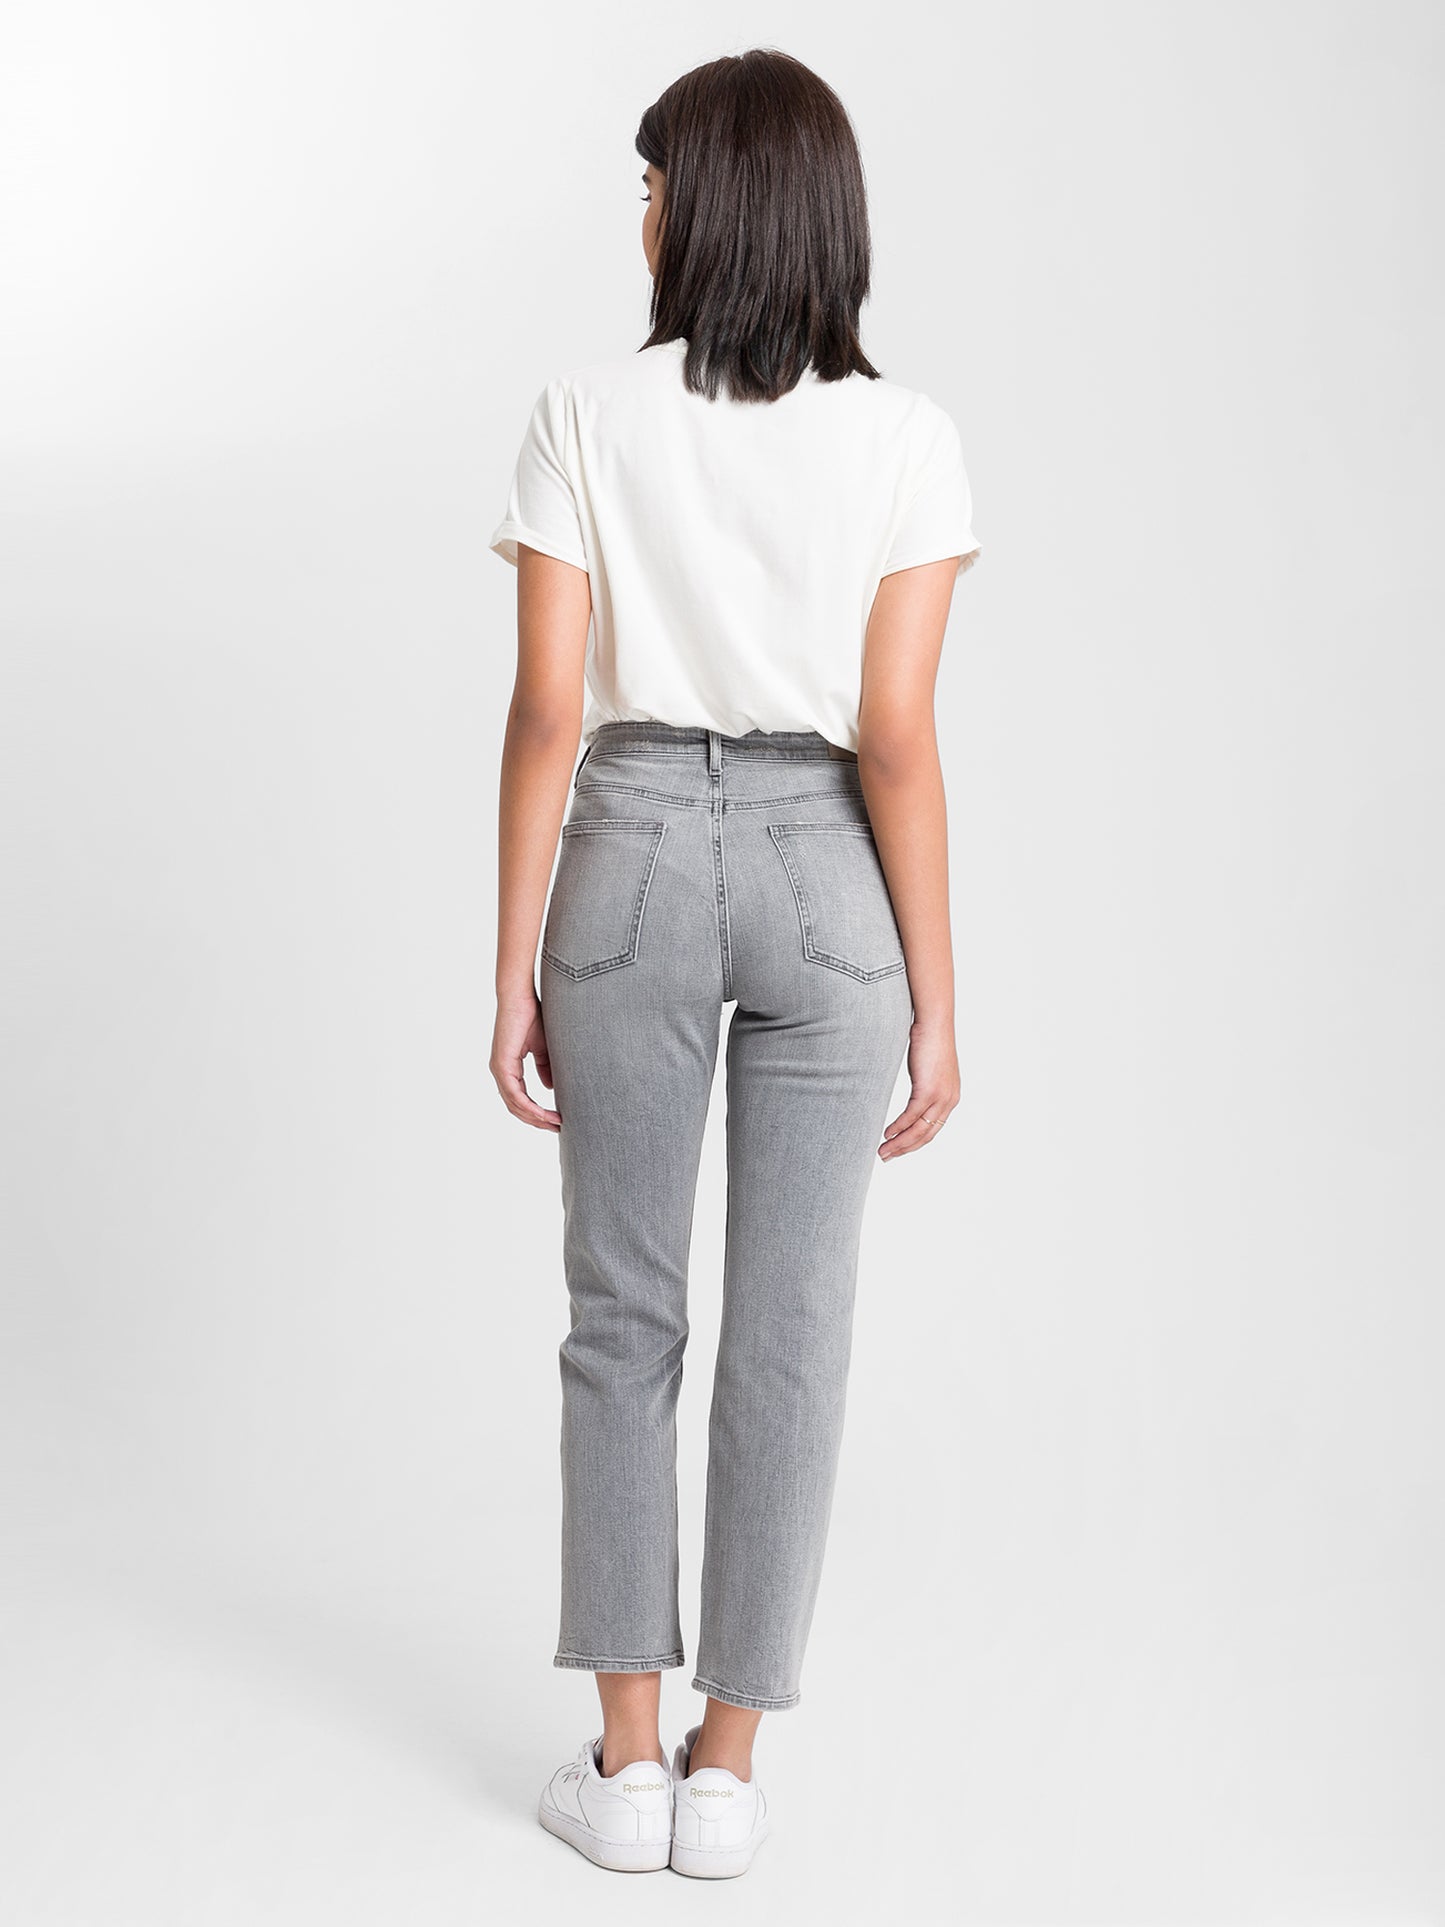 Marisa women's jeans regular fit high waist straight leg light grey